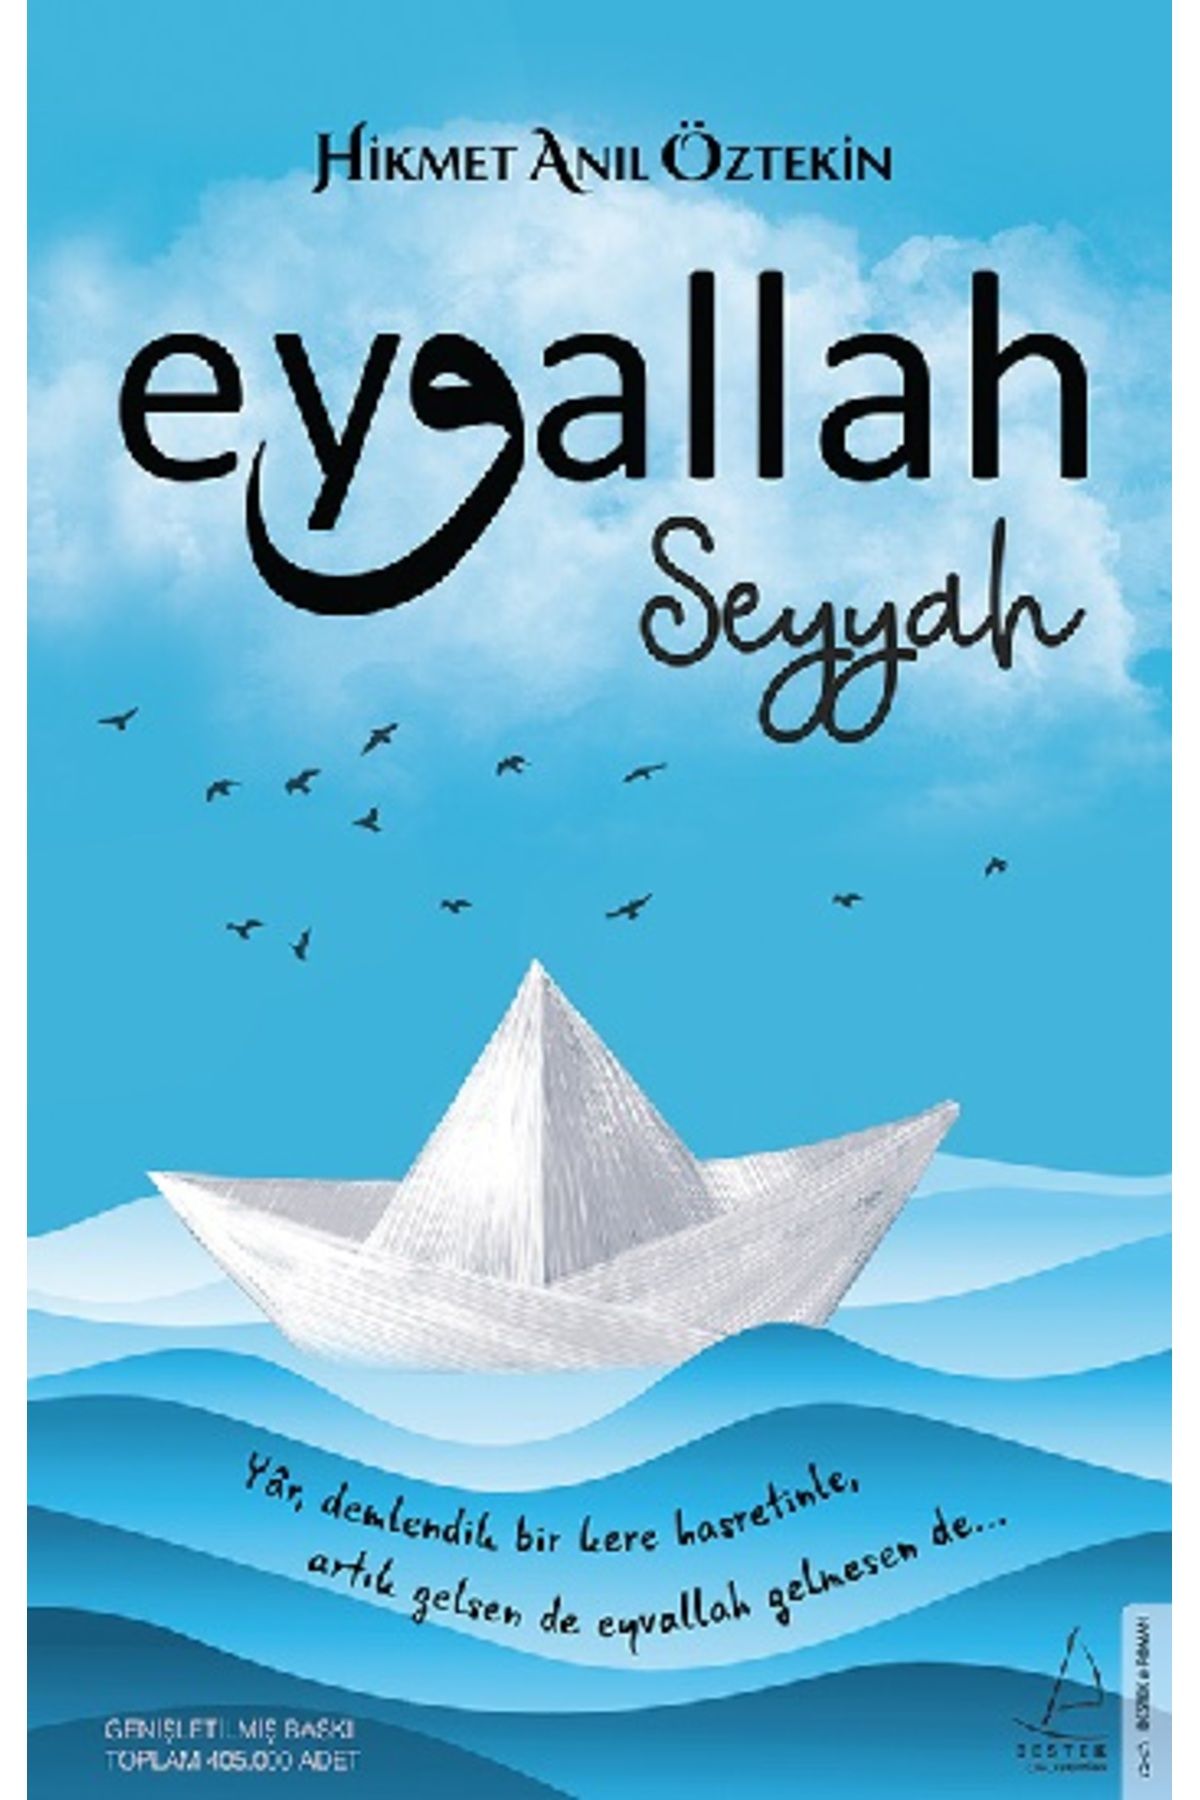 Destek Yayınları Eyvallah -seyyah